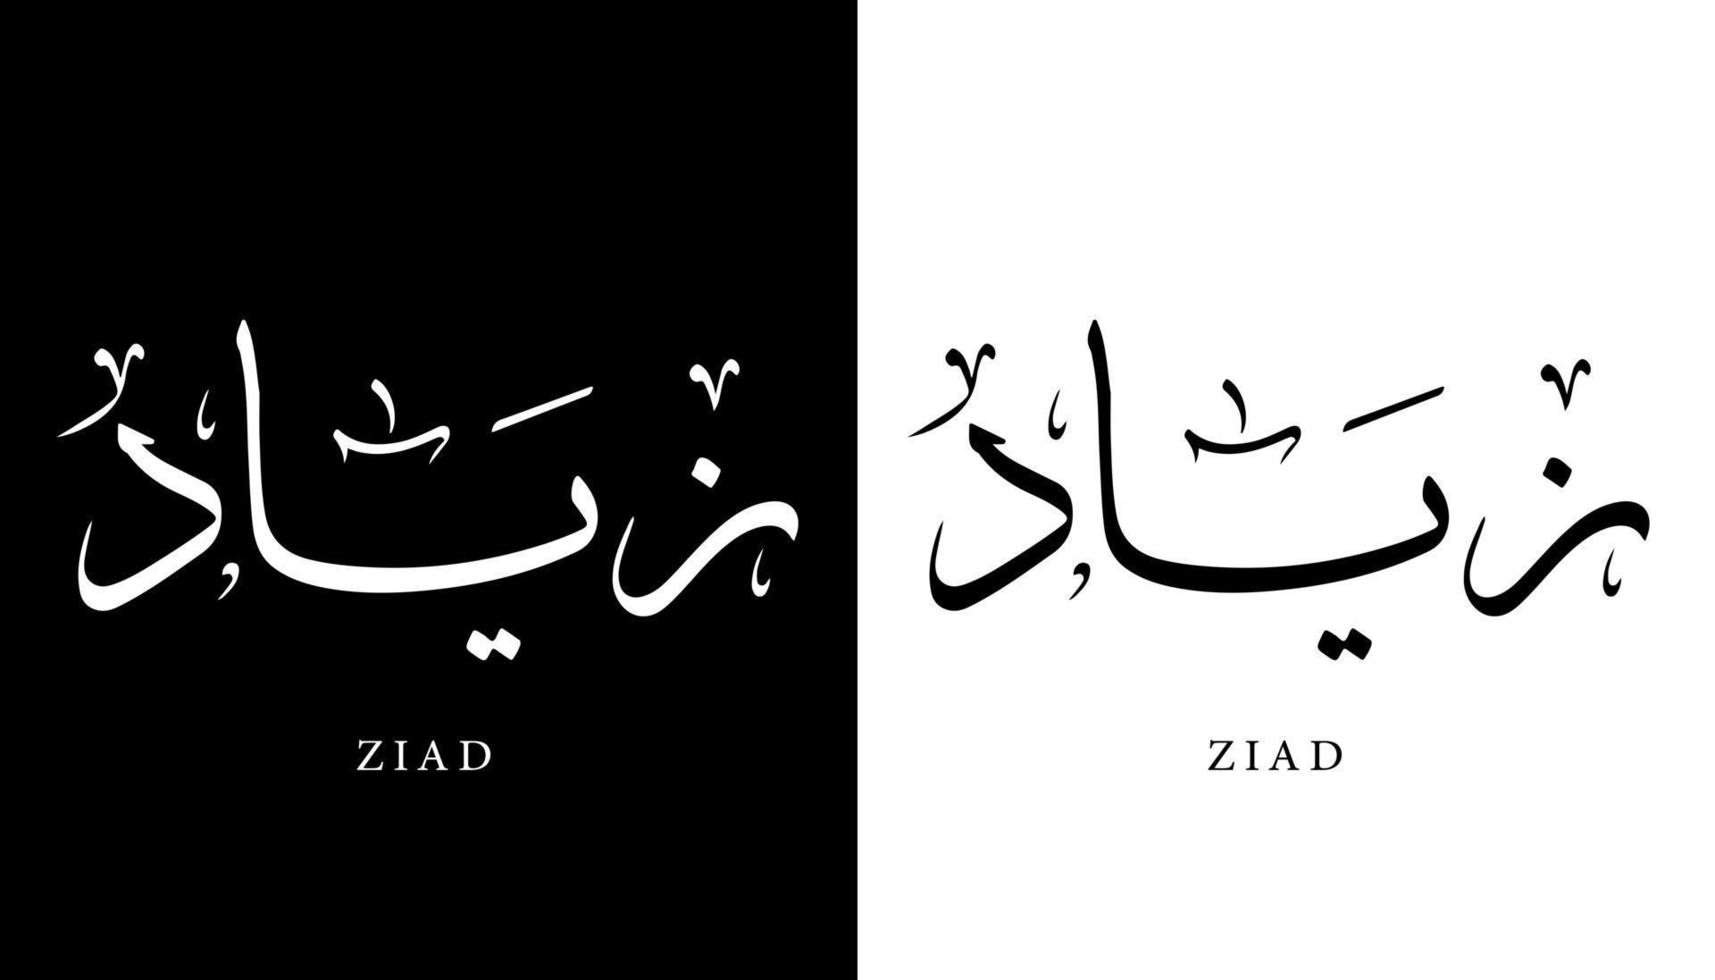 nome de caligrafia árabe traduzido 'ziad' letras árabes alfabeto fonte letras ilustração em vetor logotipo islâmico